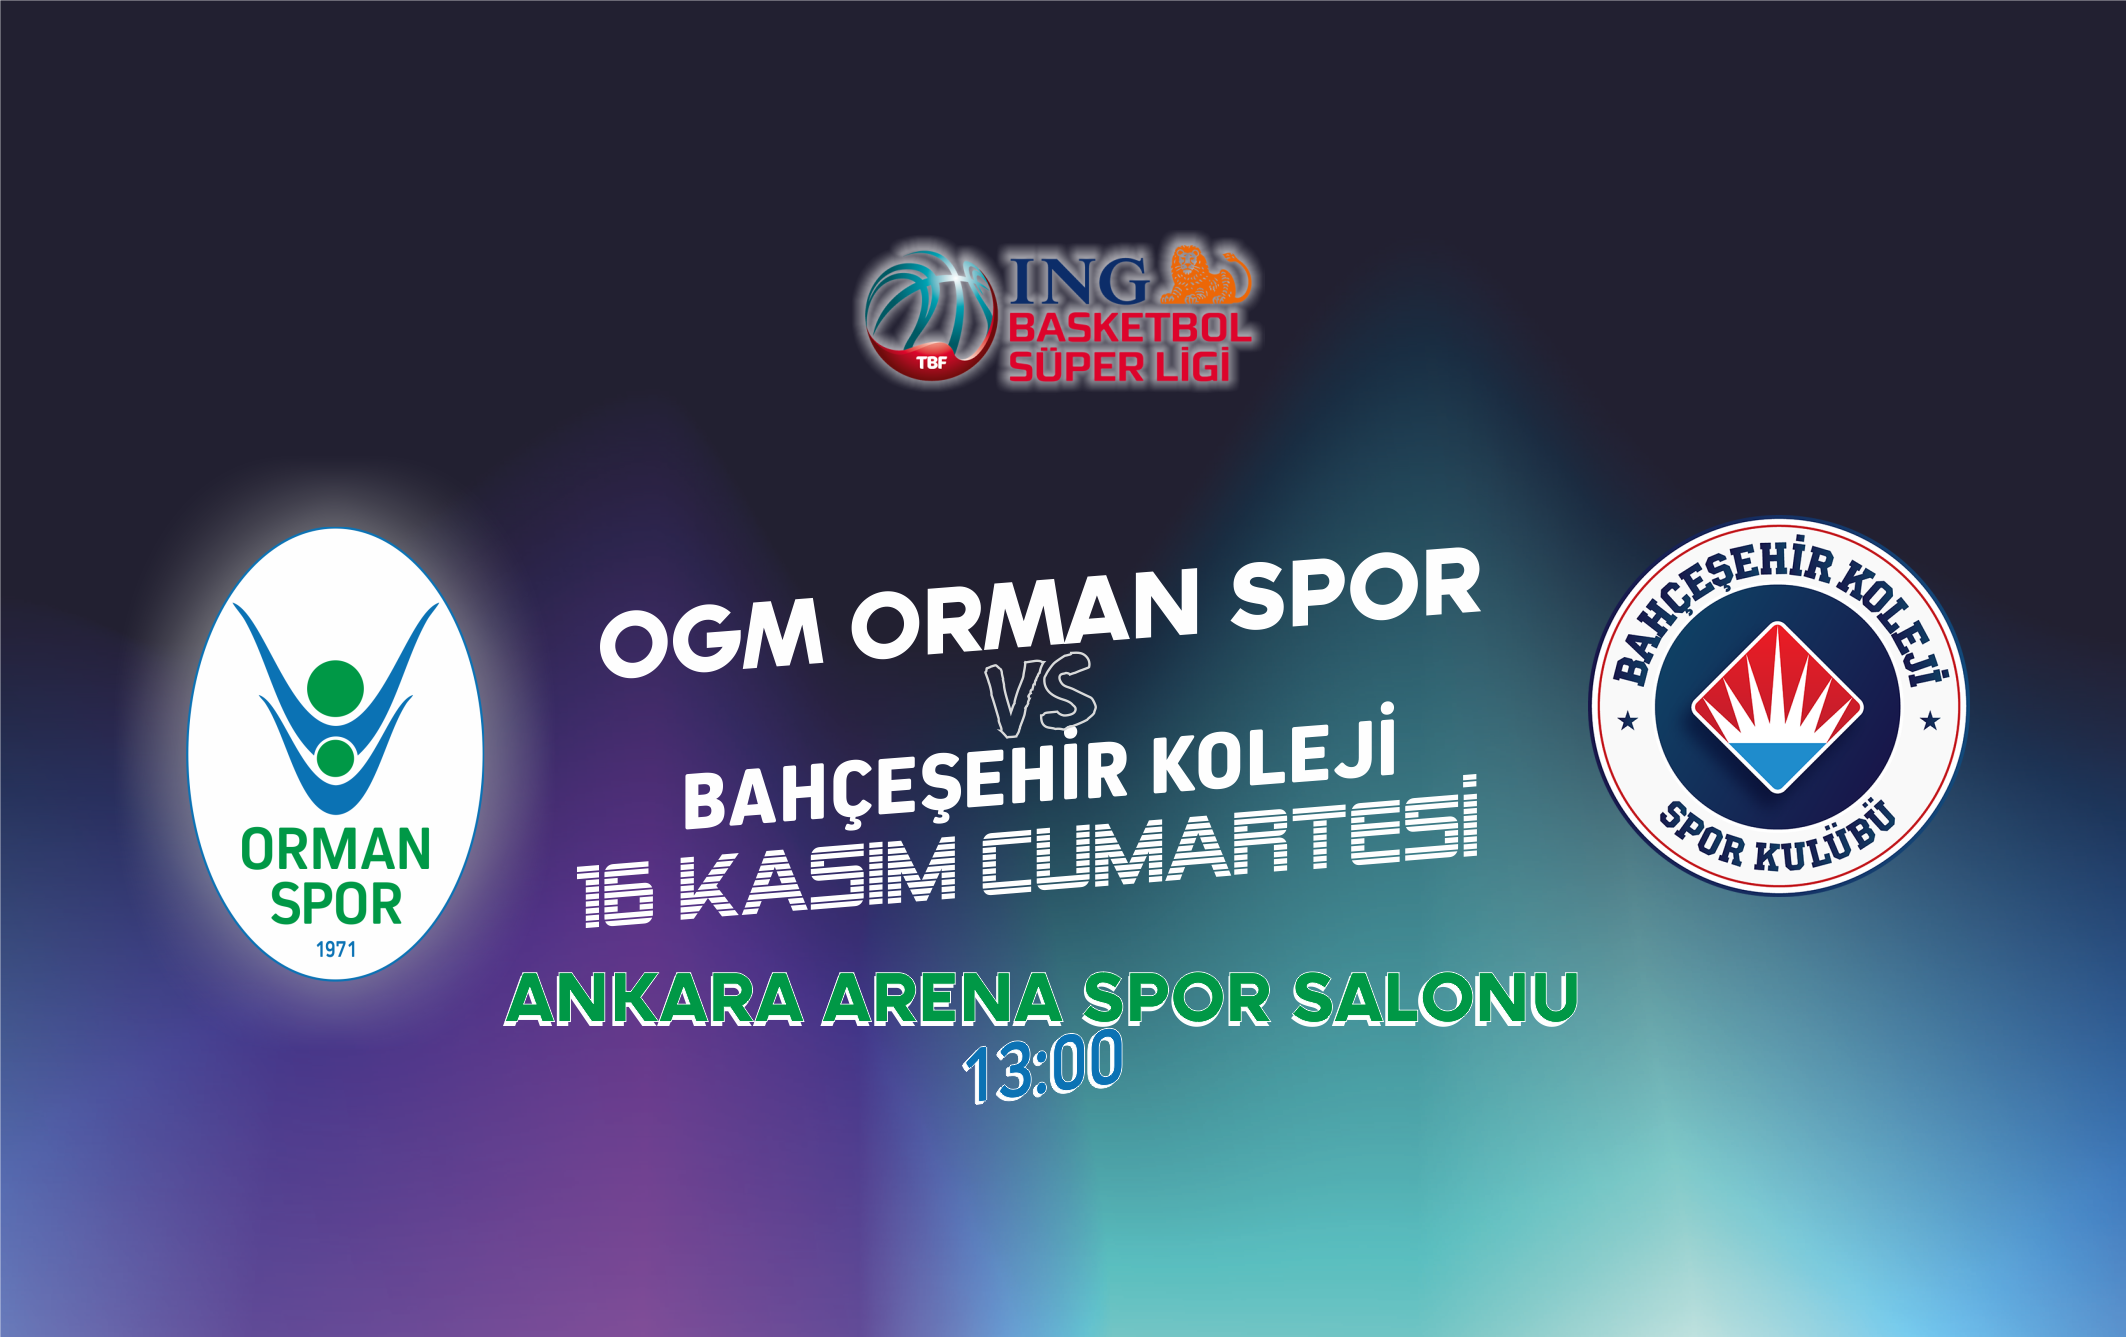 OGM Ormanspor 108-93 Bahçeşehir Koleji - 8. Hafta Özeti